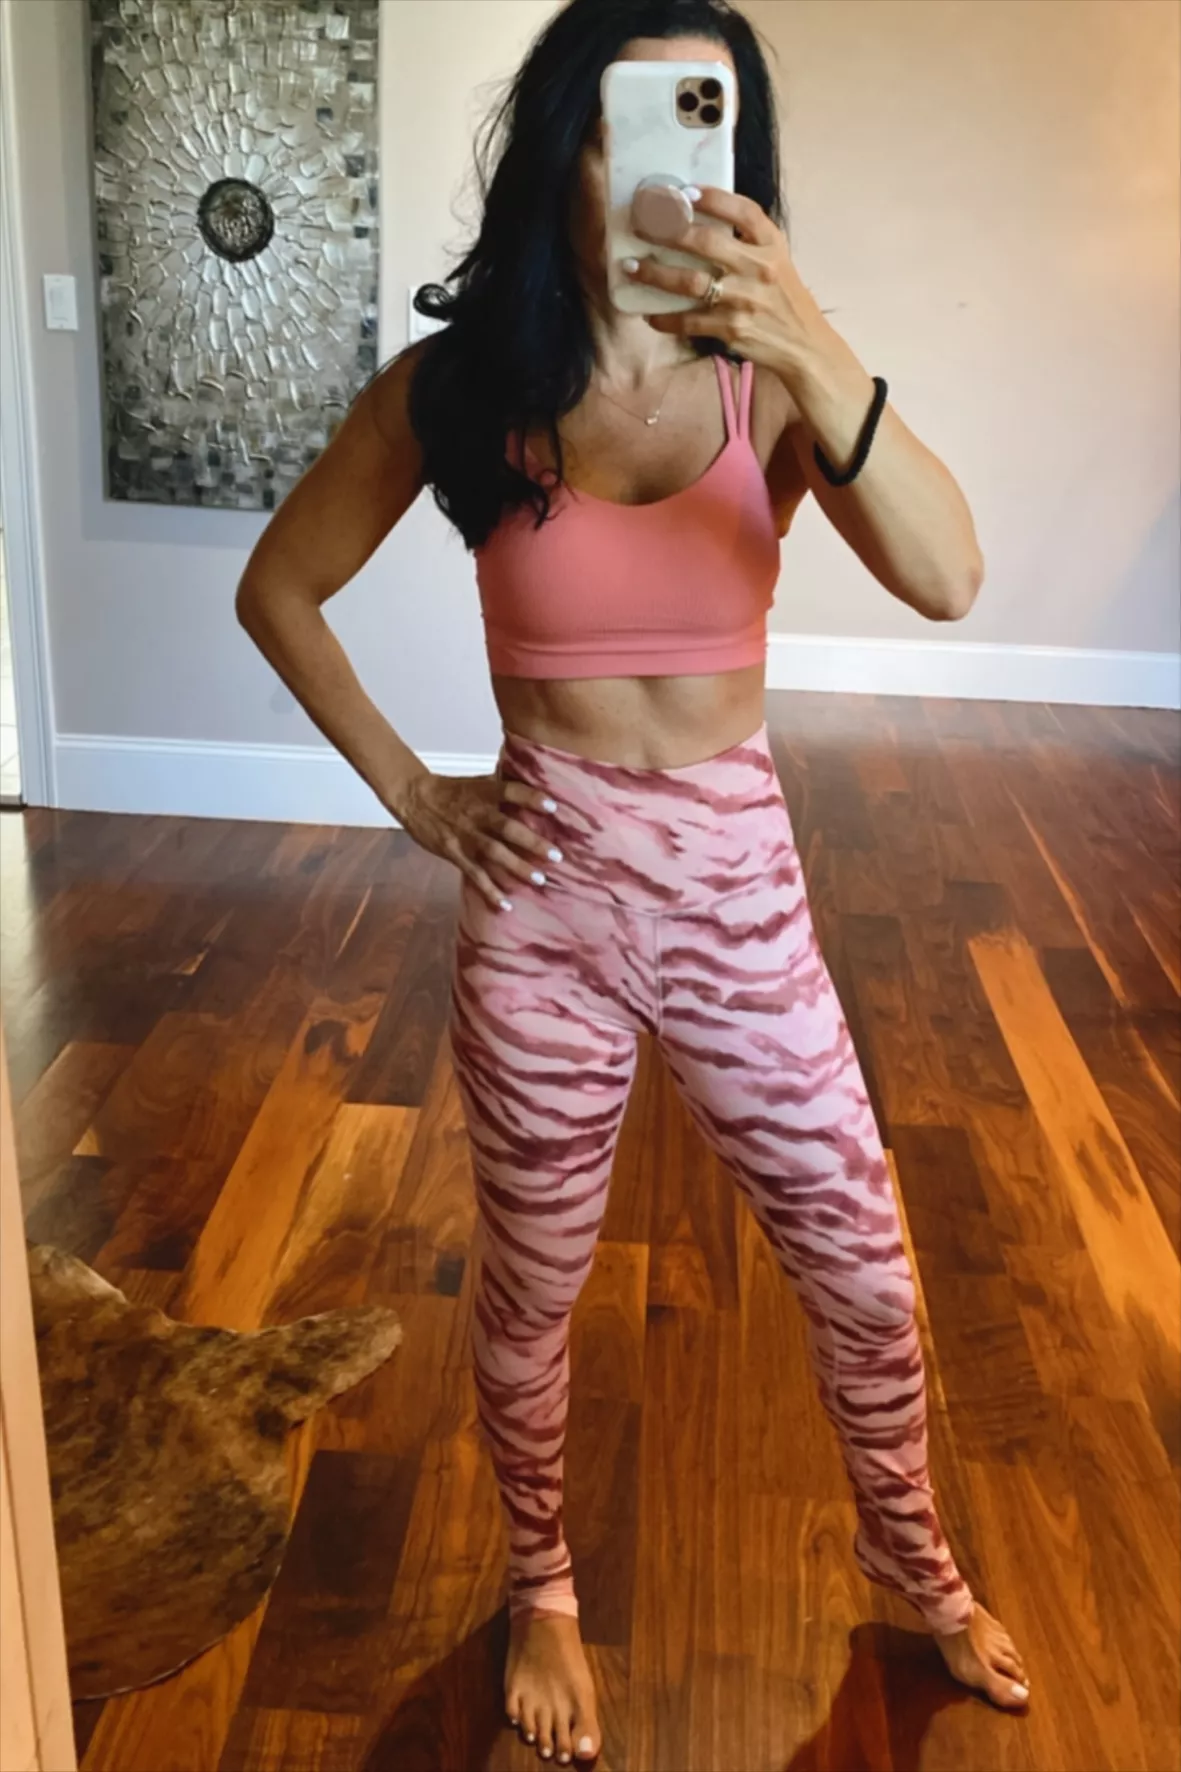 Pink Zebra Printed Cropped Gym Legging